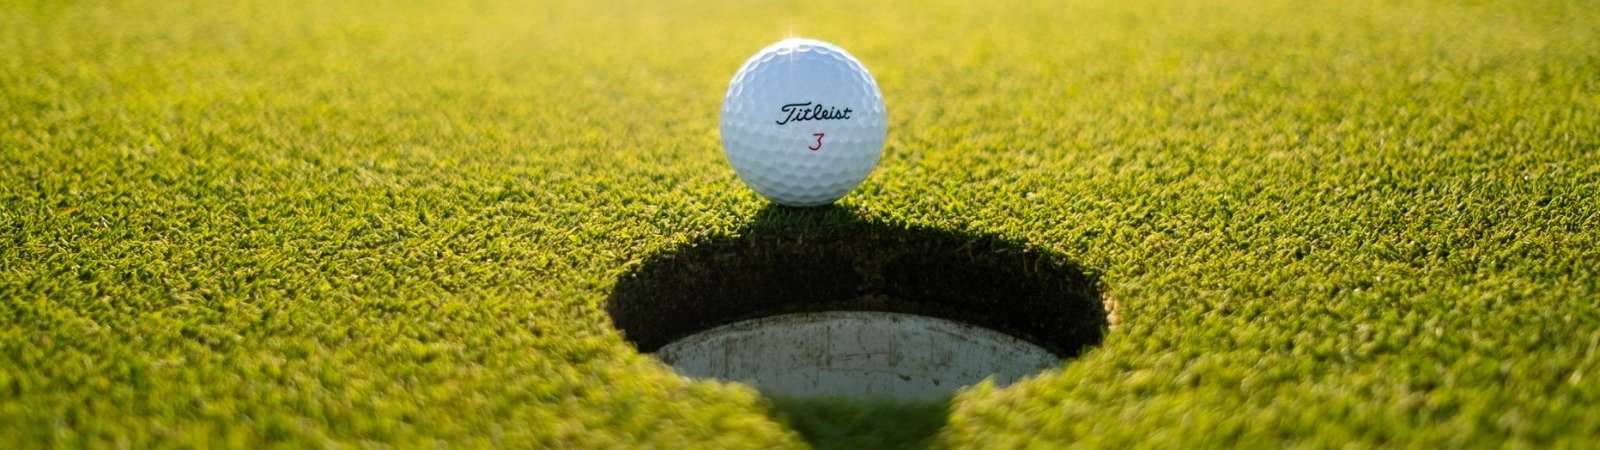 uitzendrechten golf - live golf kijken - major - pga tour kijken - waar golf kijken